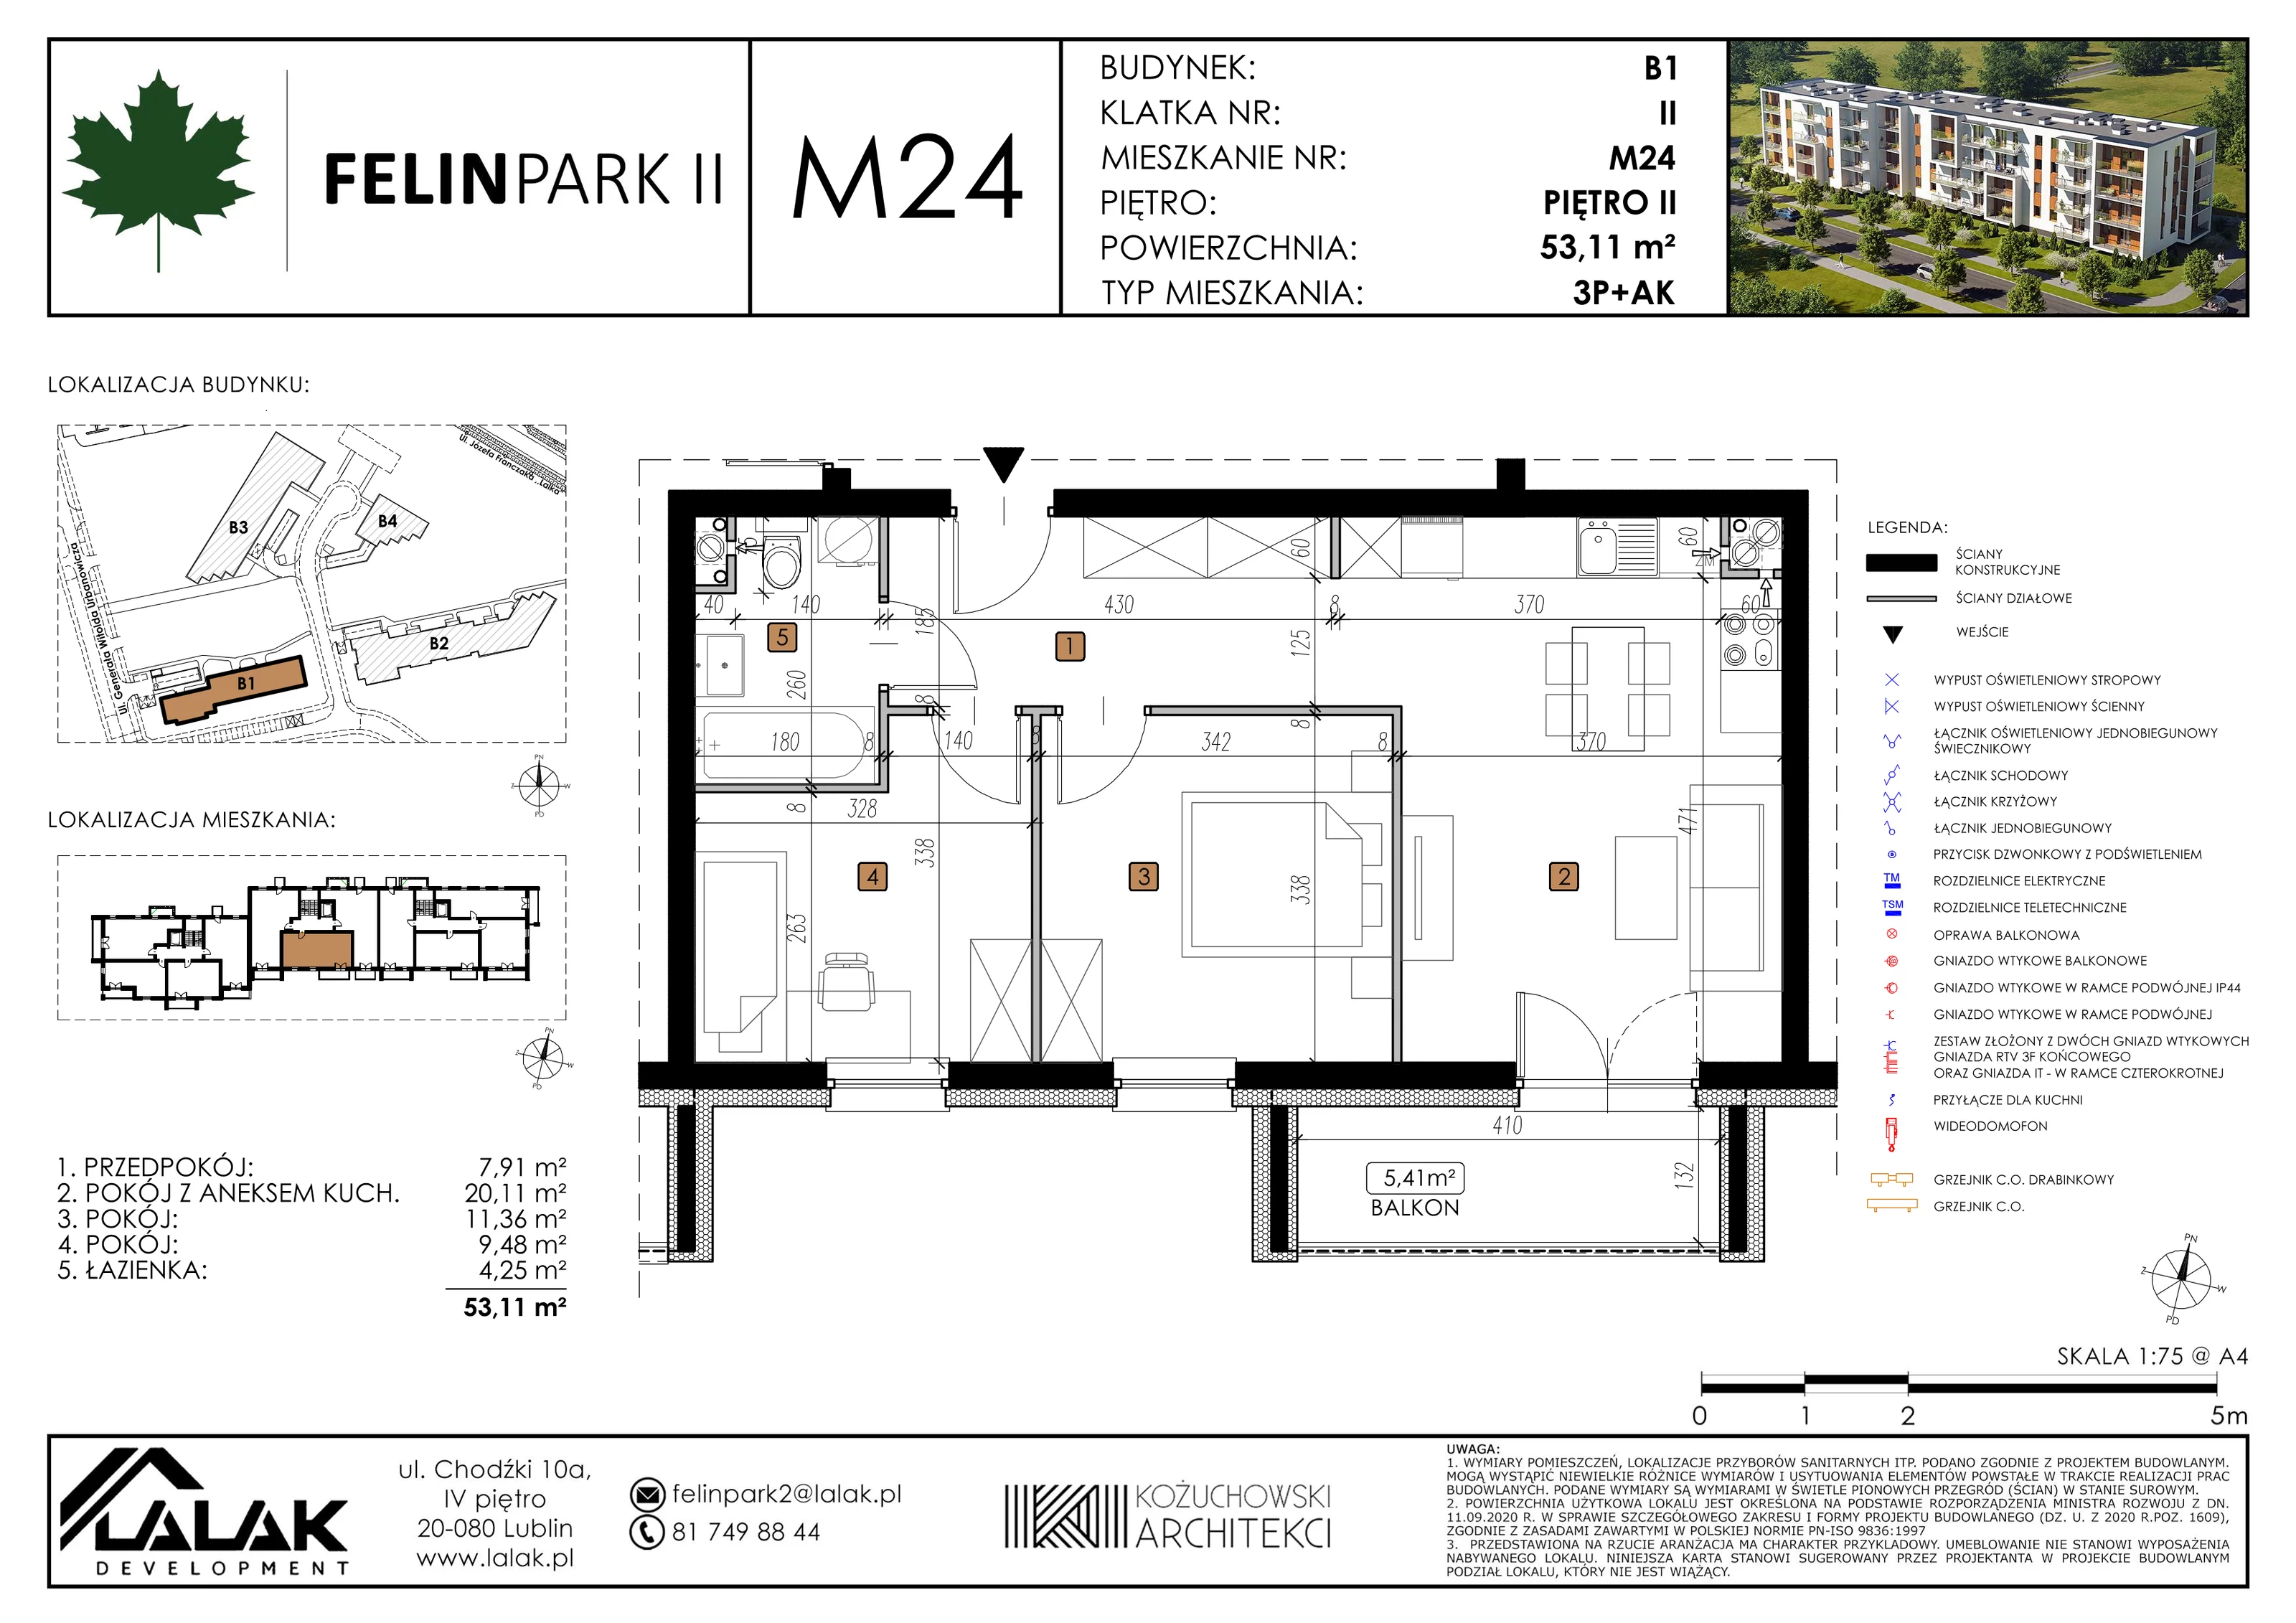 Mieszkanie 53,12 m², piętro 2, oferta nr B1_M24/I, Felin Park II, Lublin, Felin, ul. gen. Stanisława Skalskiego 8-10